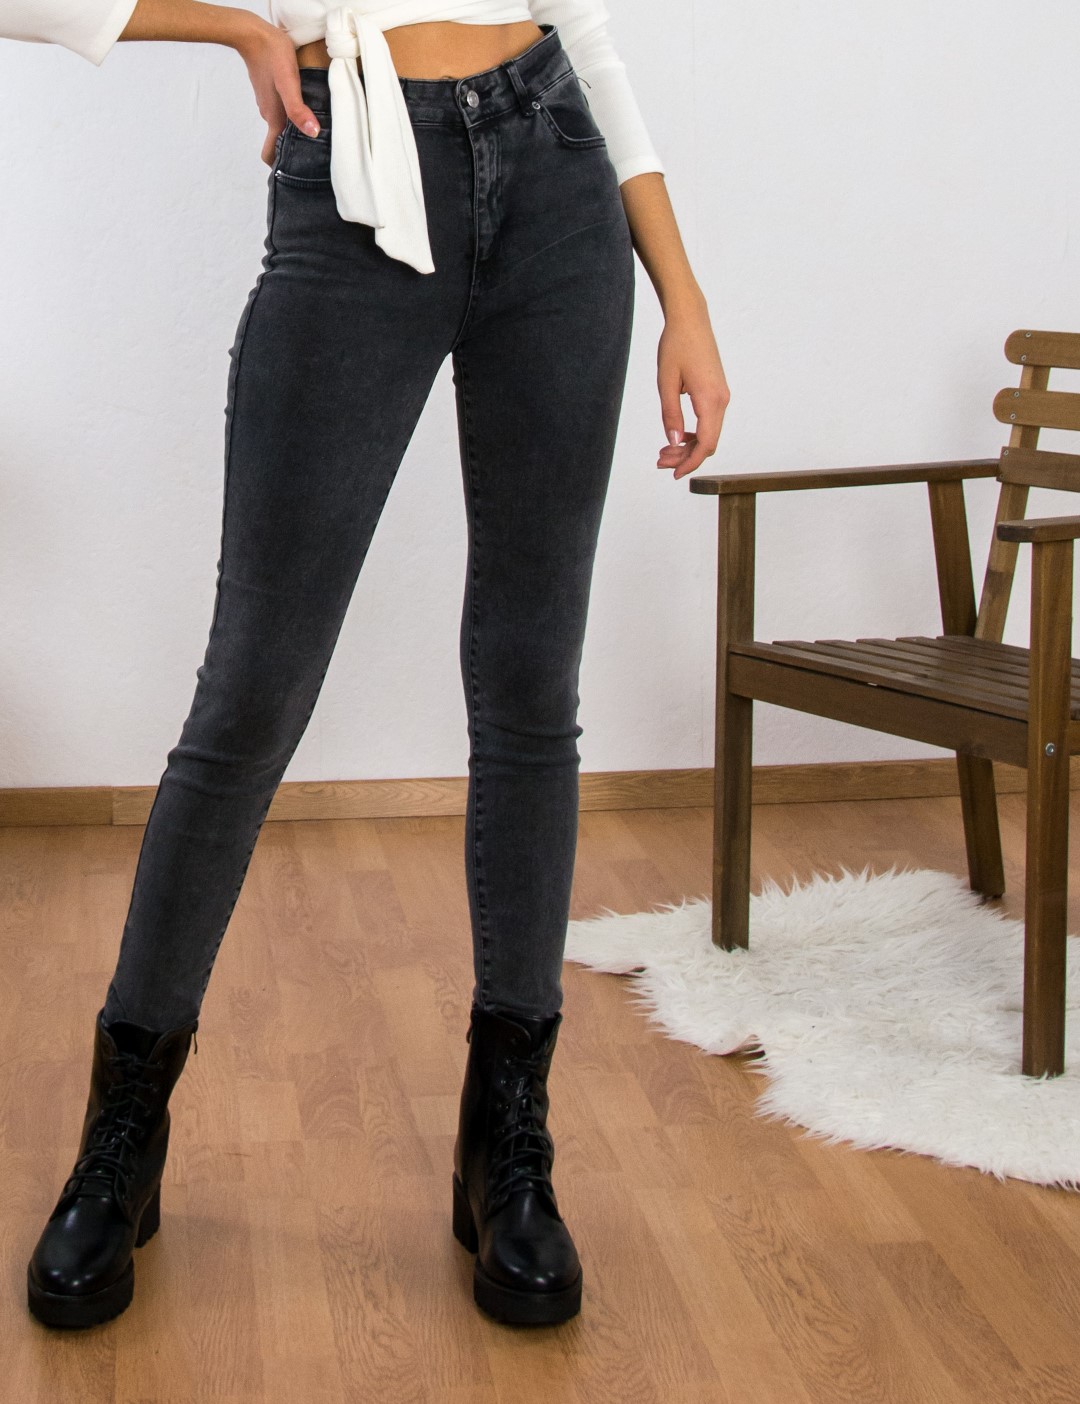 Γυναικείο μαύρο τζιν παντελόνι σωλήνας Plus Size ελαστικό LY1832